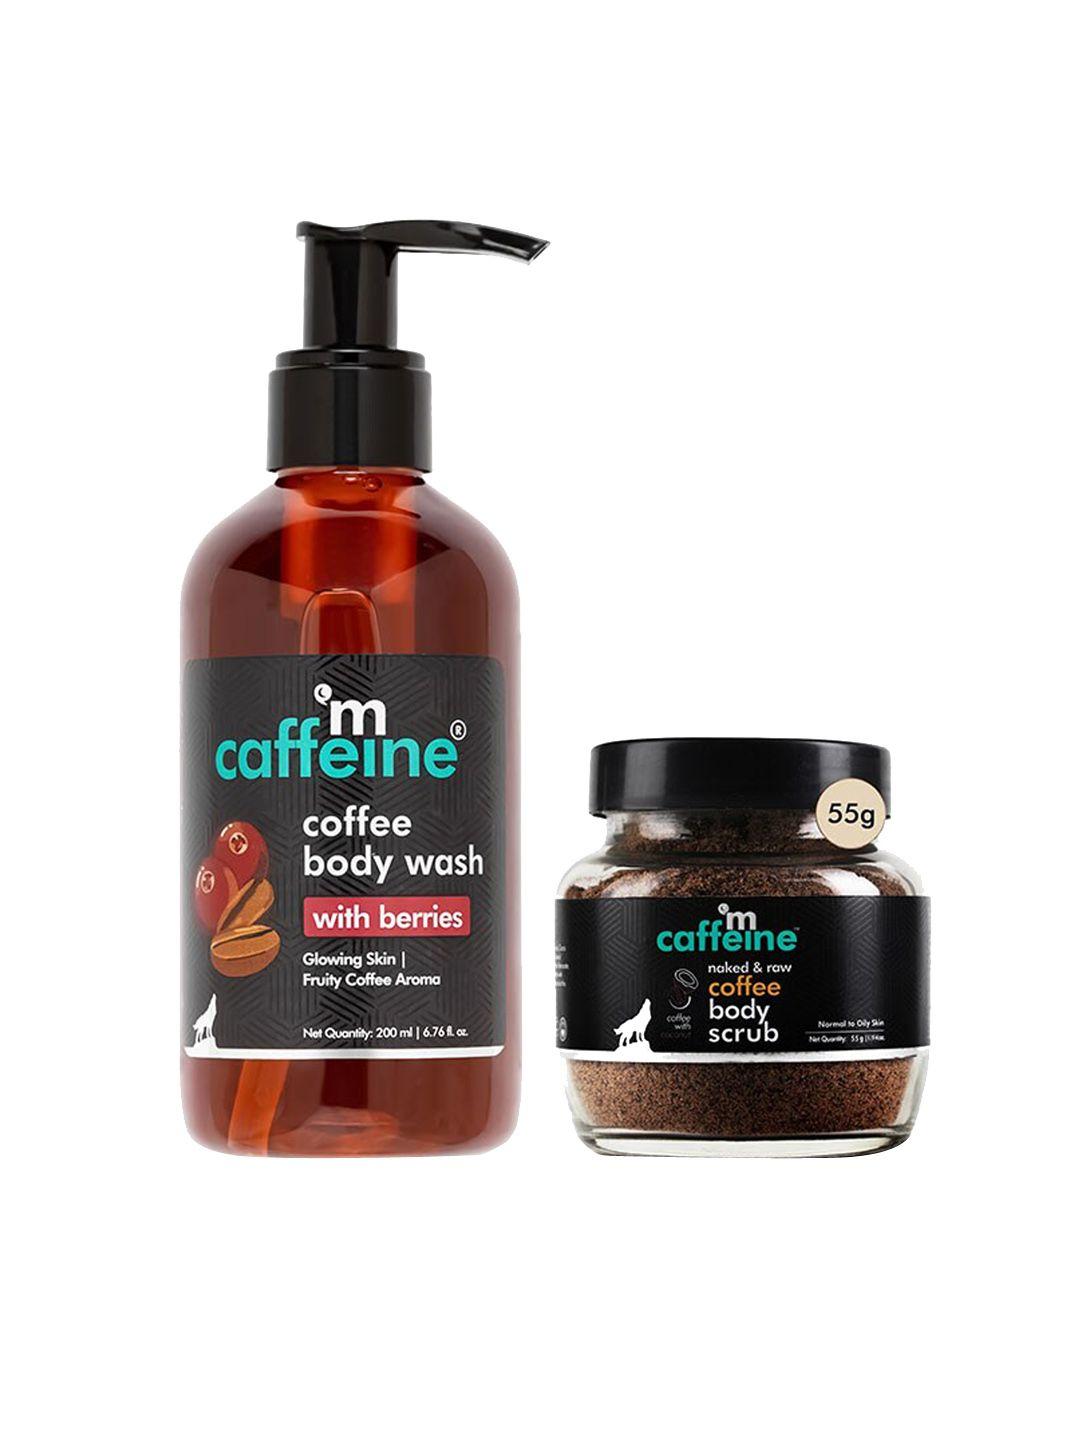 mcaffeine-smooth-&-glowing-skin-essentials---body-wash-200ml-&-body-scrub-55g